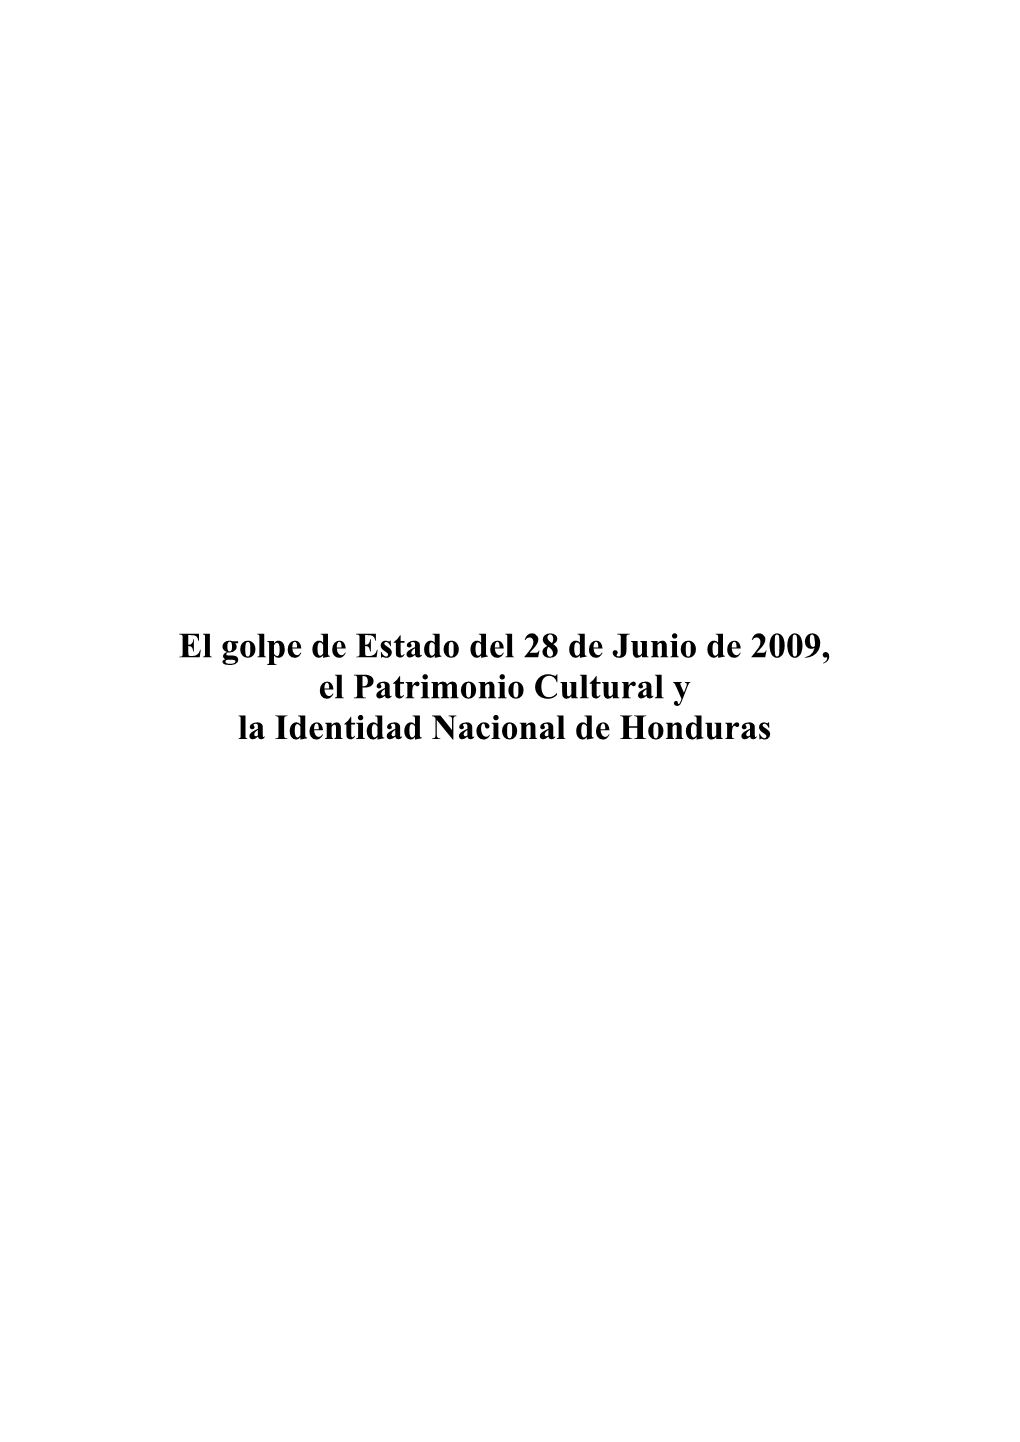 El Golpe De Estado Del 28 De Junio De 2009, El Patrimonio Cultural Y La Identidad Nacional De Honduras